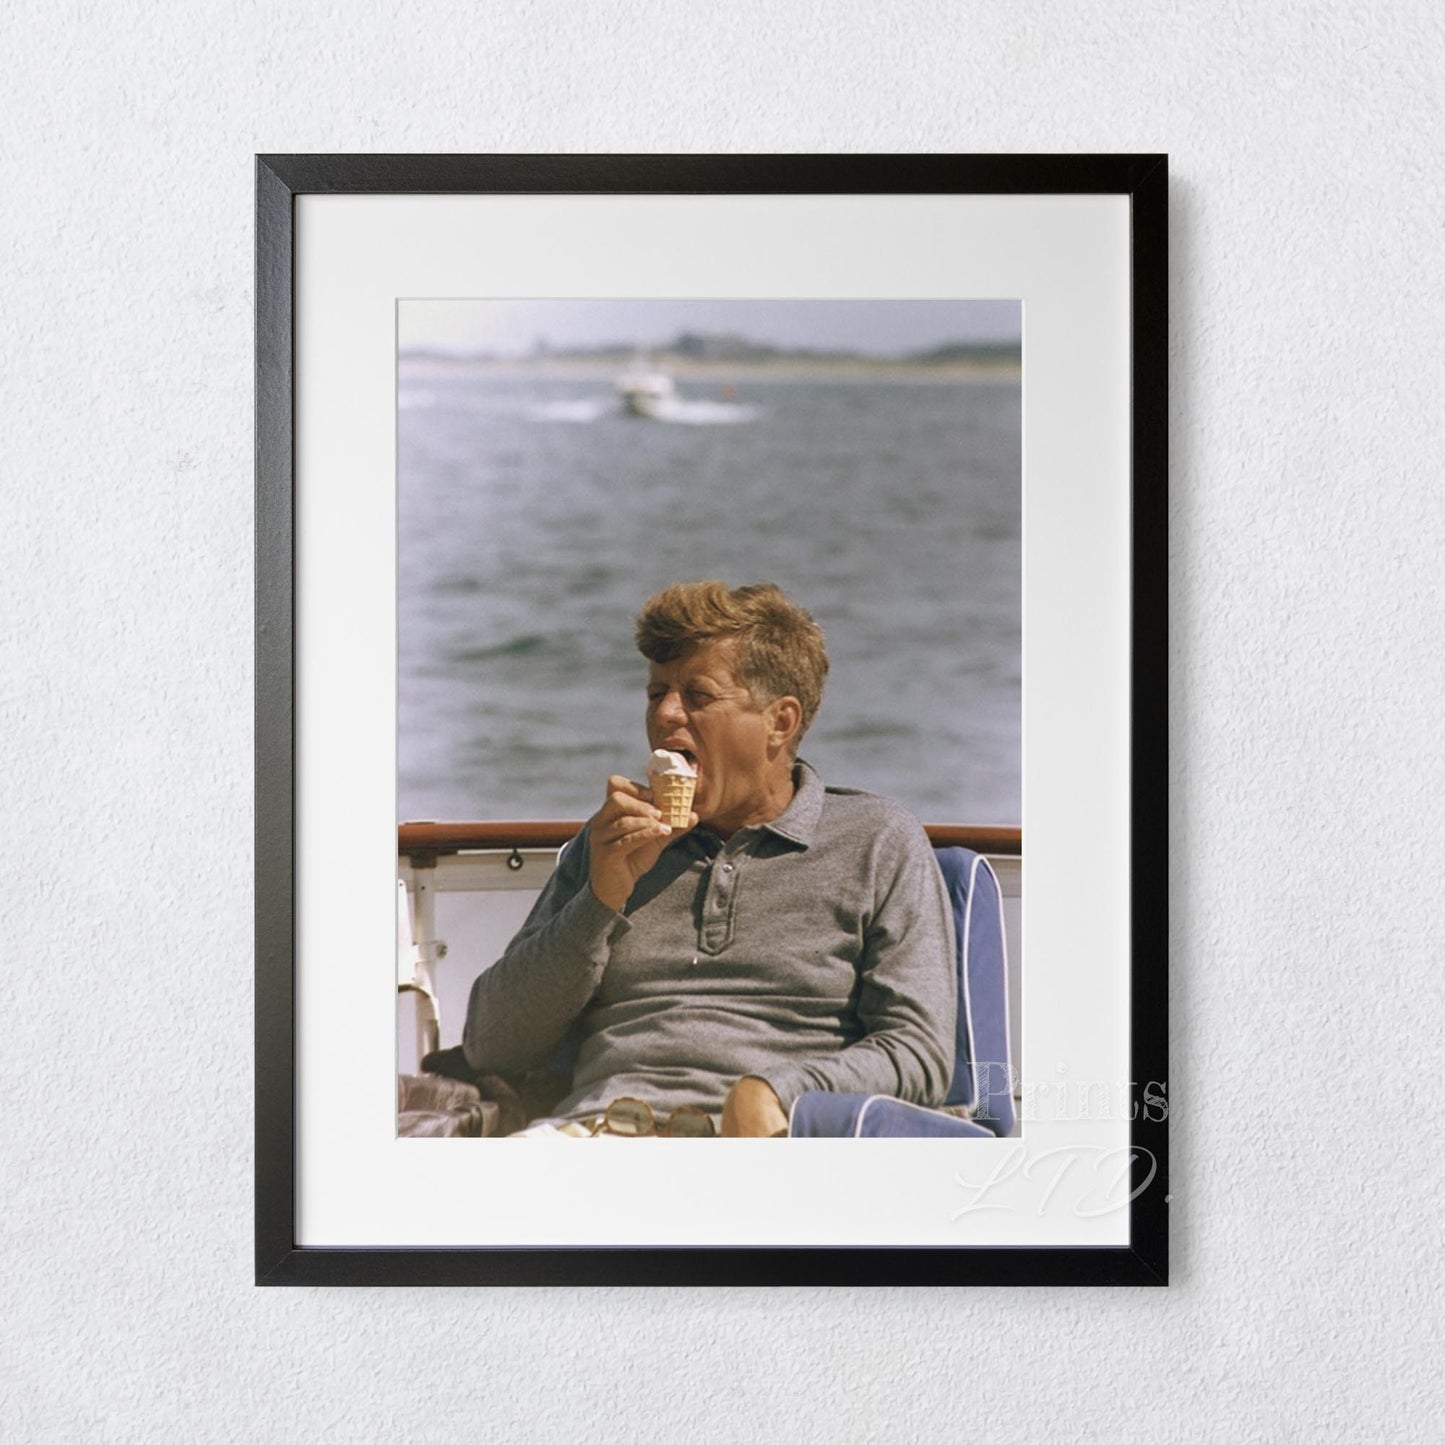 John F Kennedy (JFK) enjoys an ice cream, Cape Cod